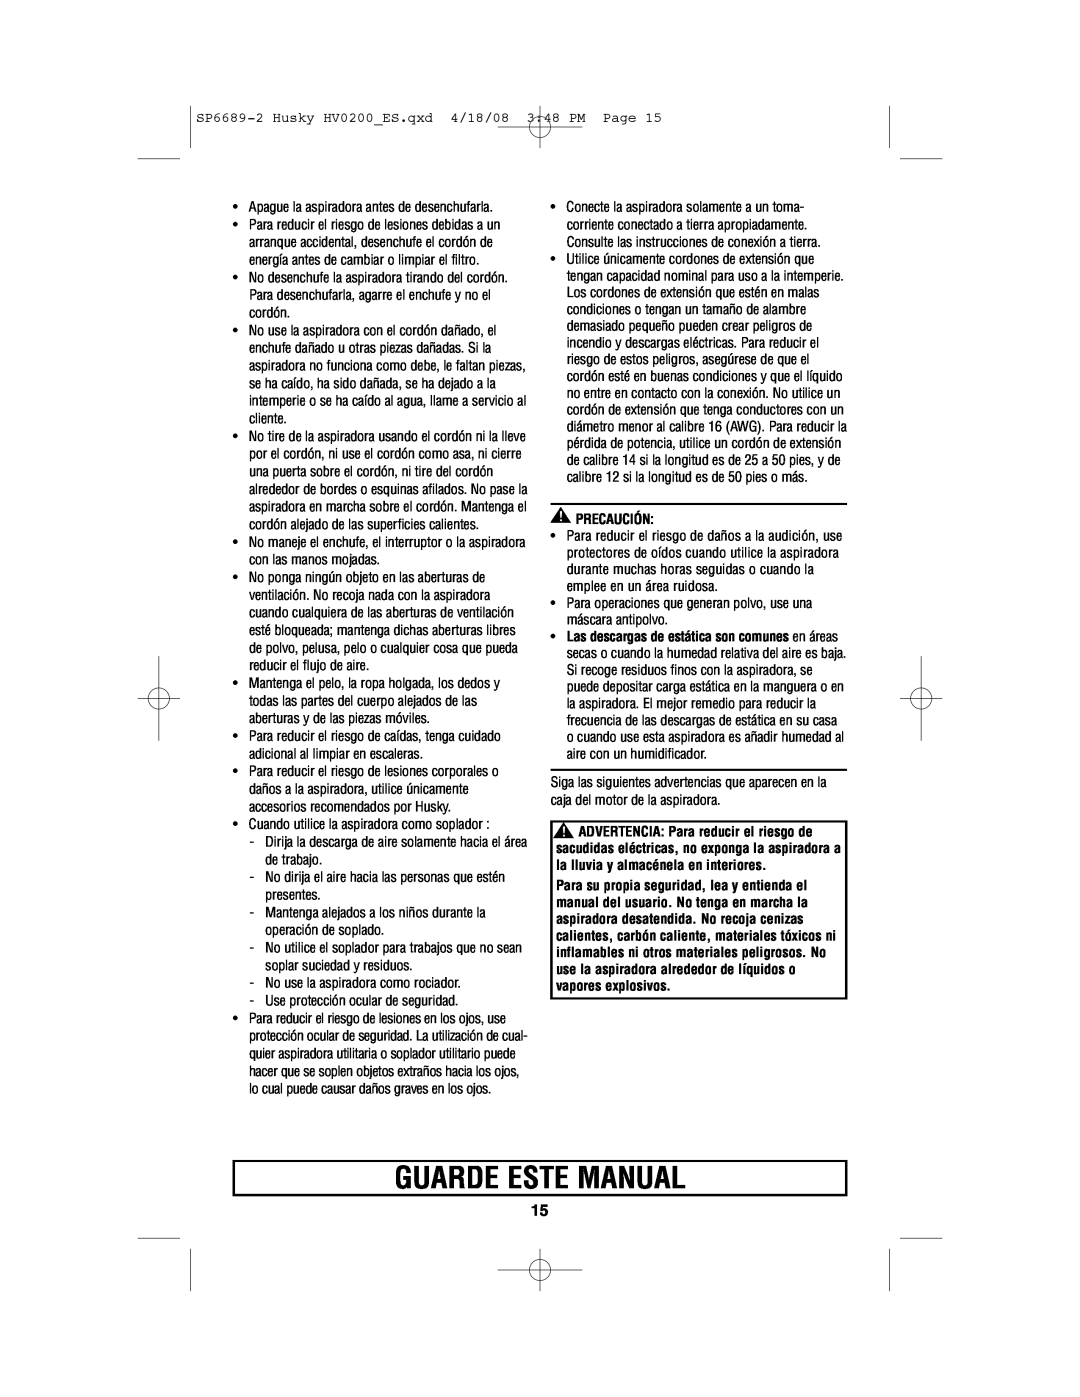 Husky HV02000 manual Guarde Este Manual, Precaución 